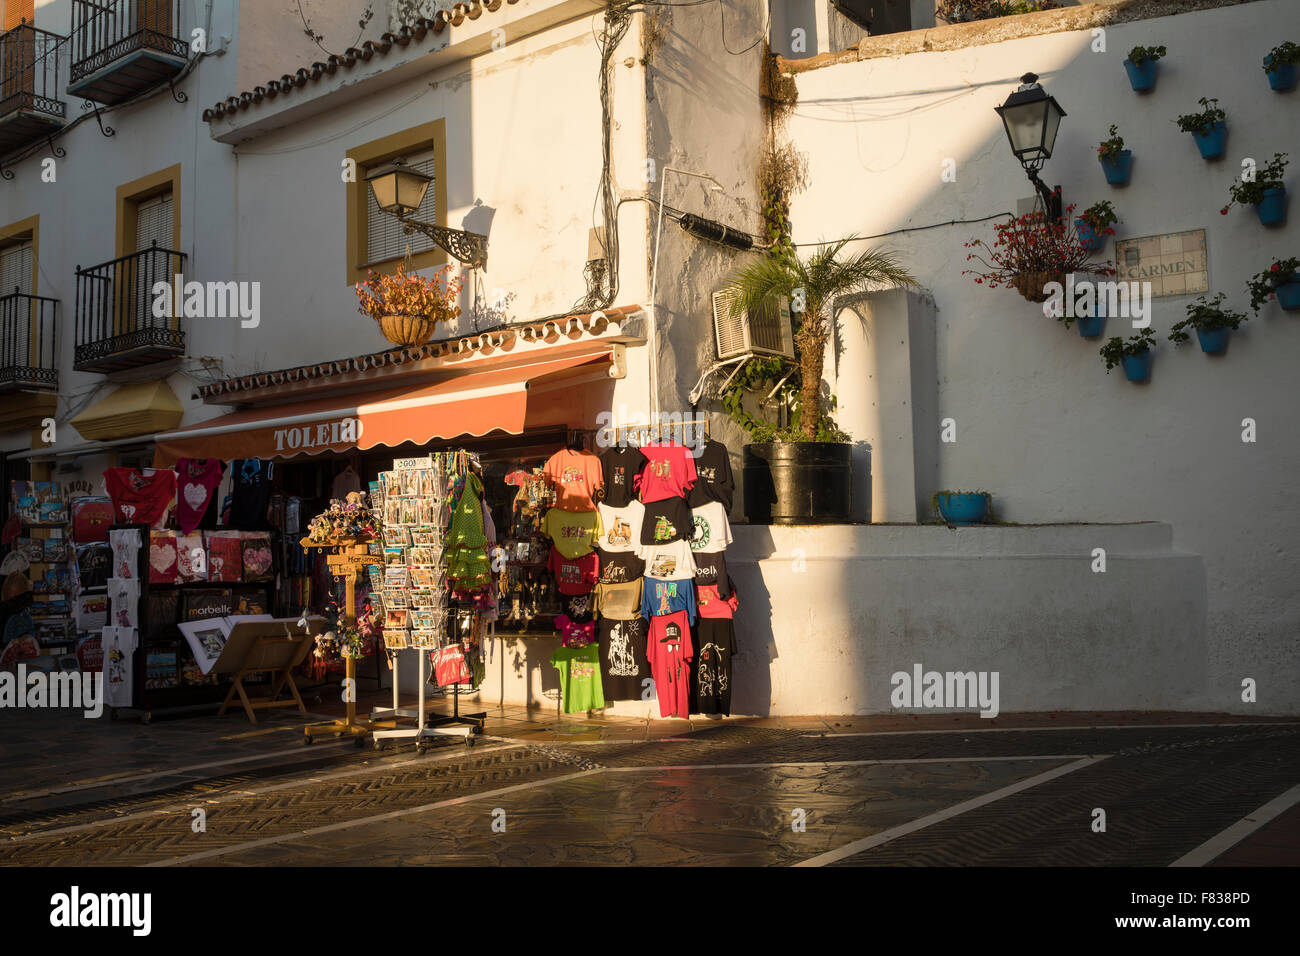 Splendidamente illuminato strada spagnolo con un negozio di souvenir e vasi di fiori sulla parete con gerani accanto ad un lampione Foto Stock